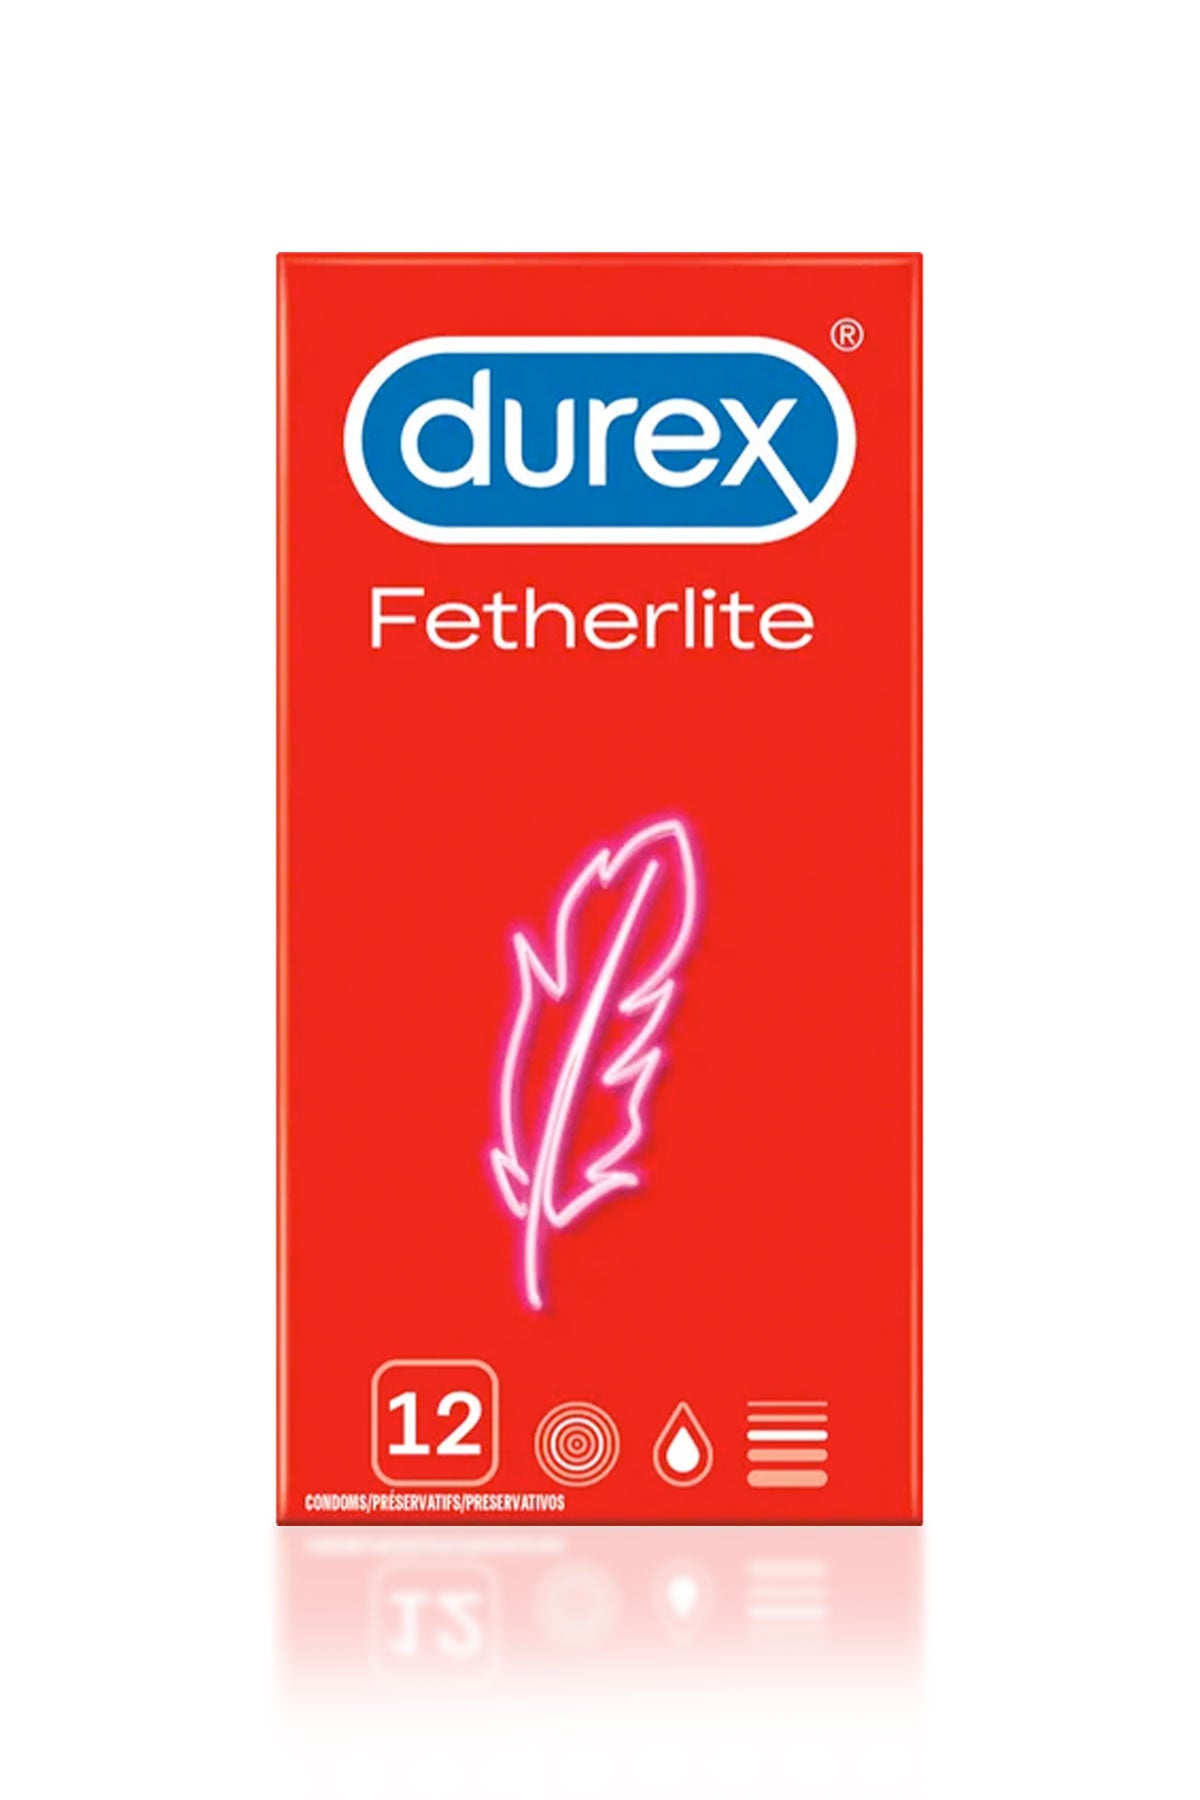 FeatherLite Extra Thin Condoms by Durex